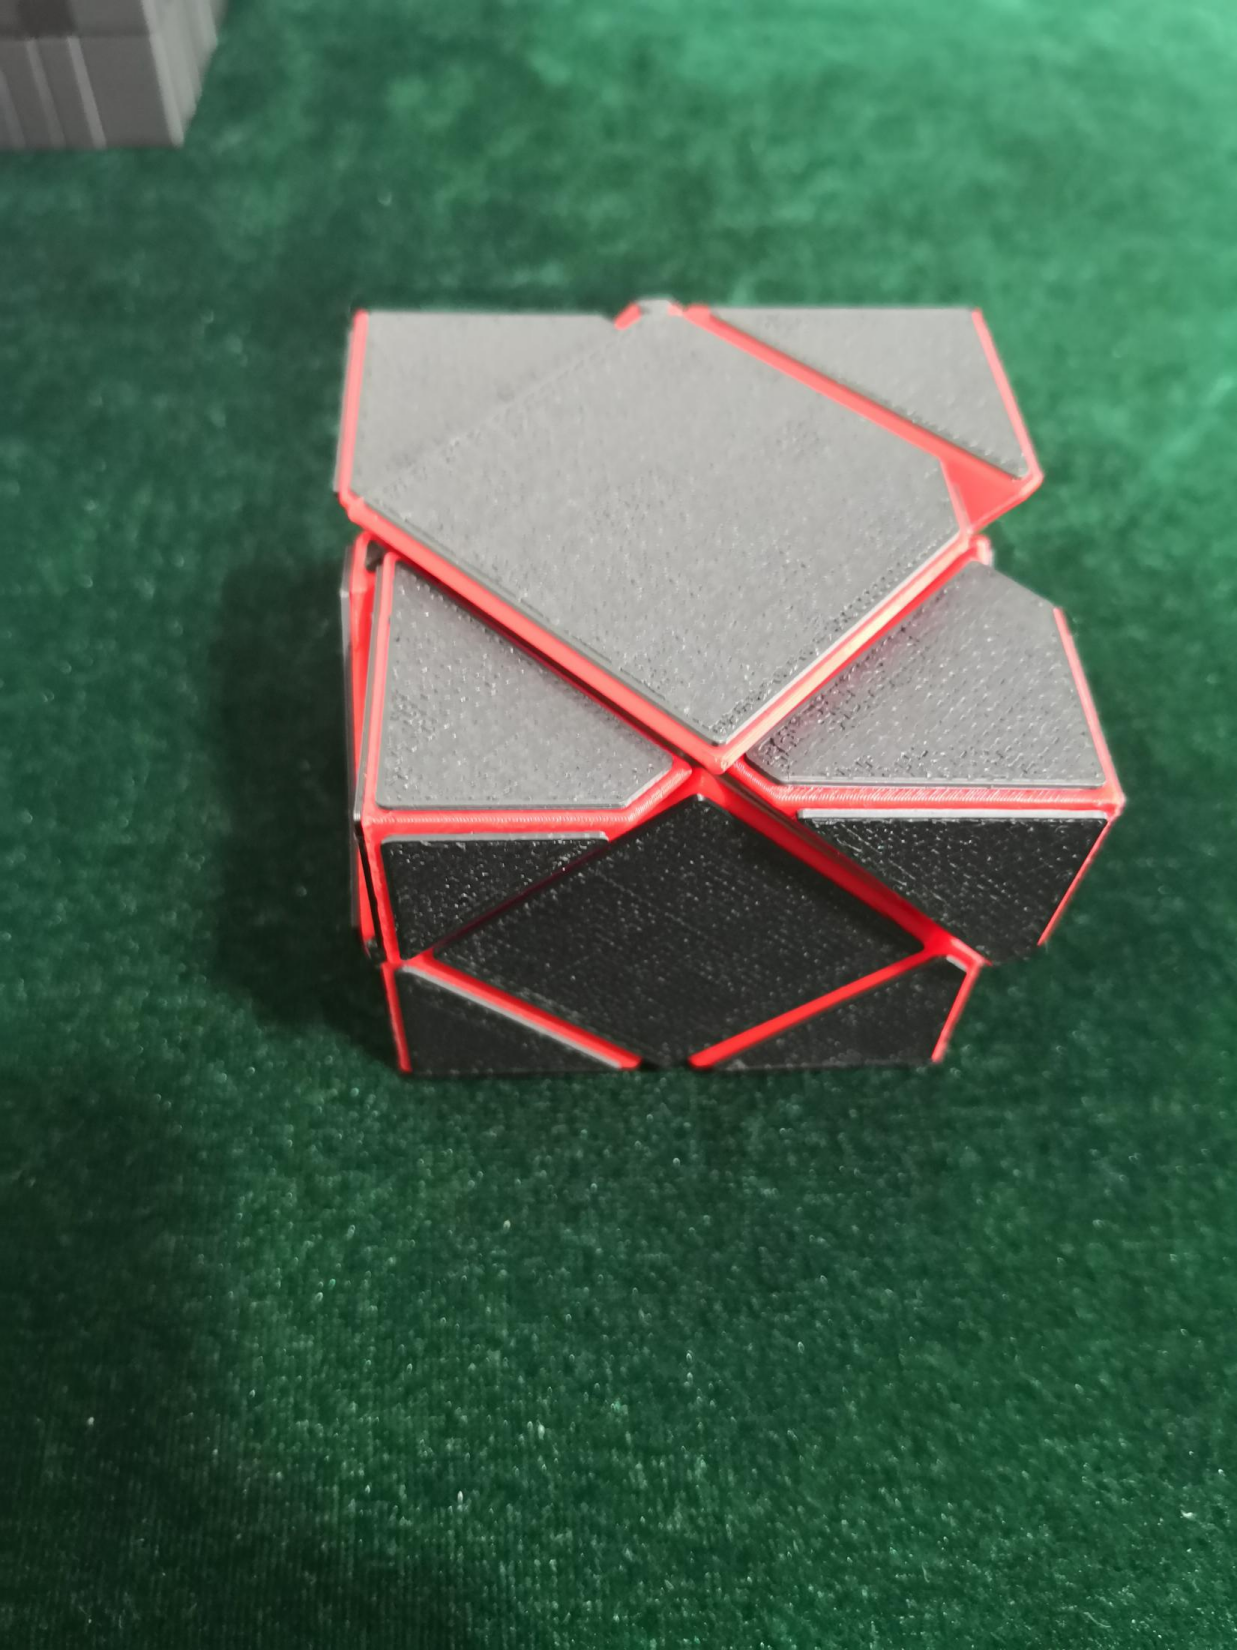 3D Printed 2x2 Mirror Skewb Speed Cube